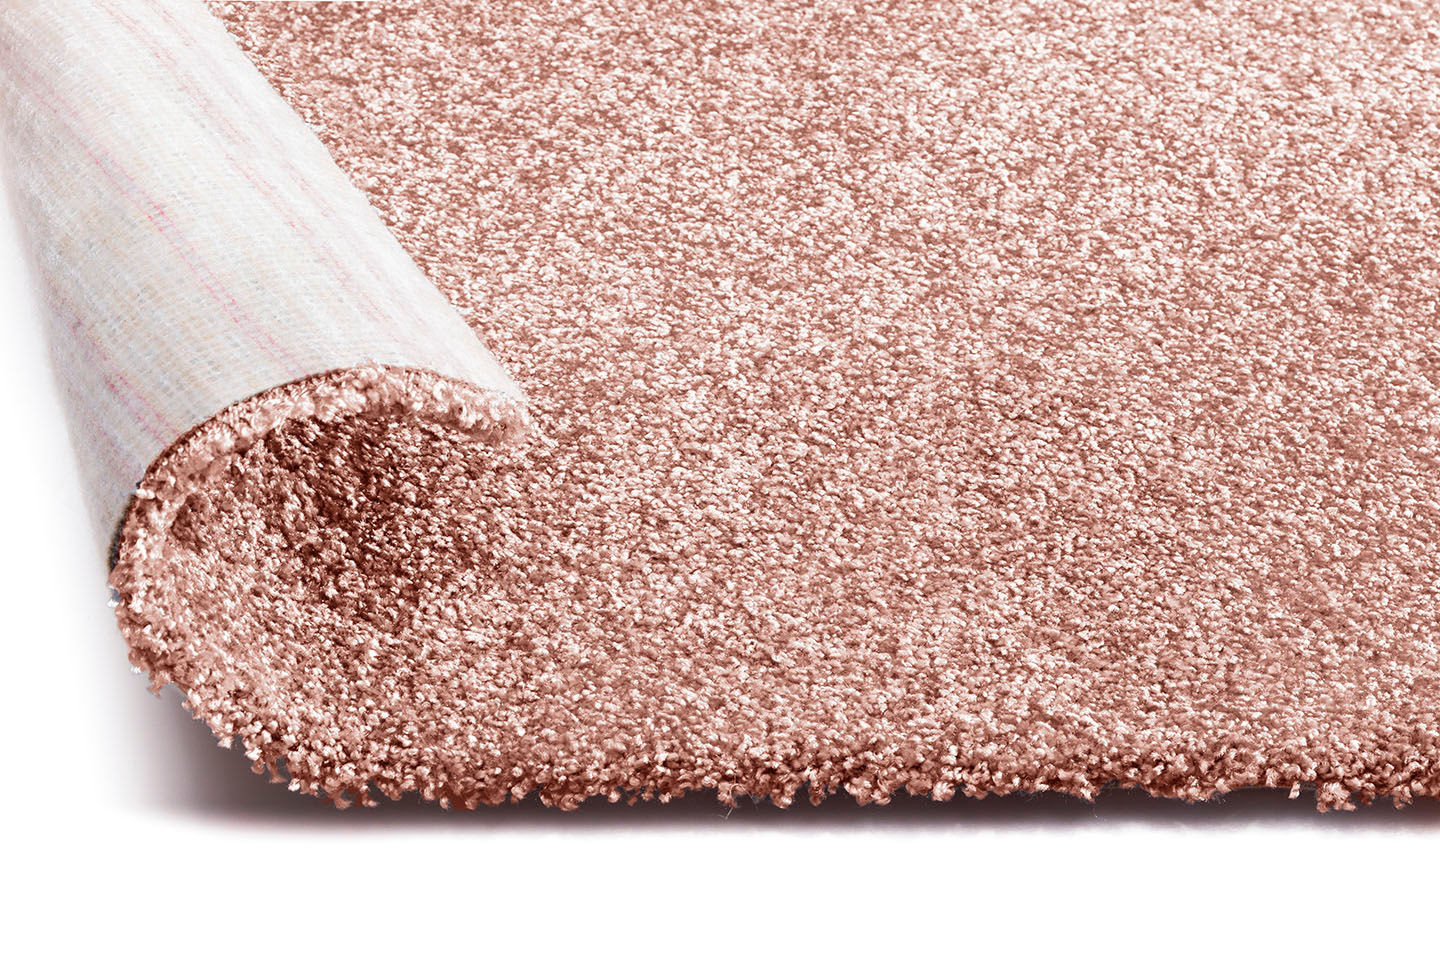 Metrážový koberec BLUSH INSPIRATIONS růžový